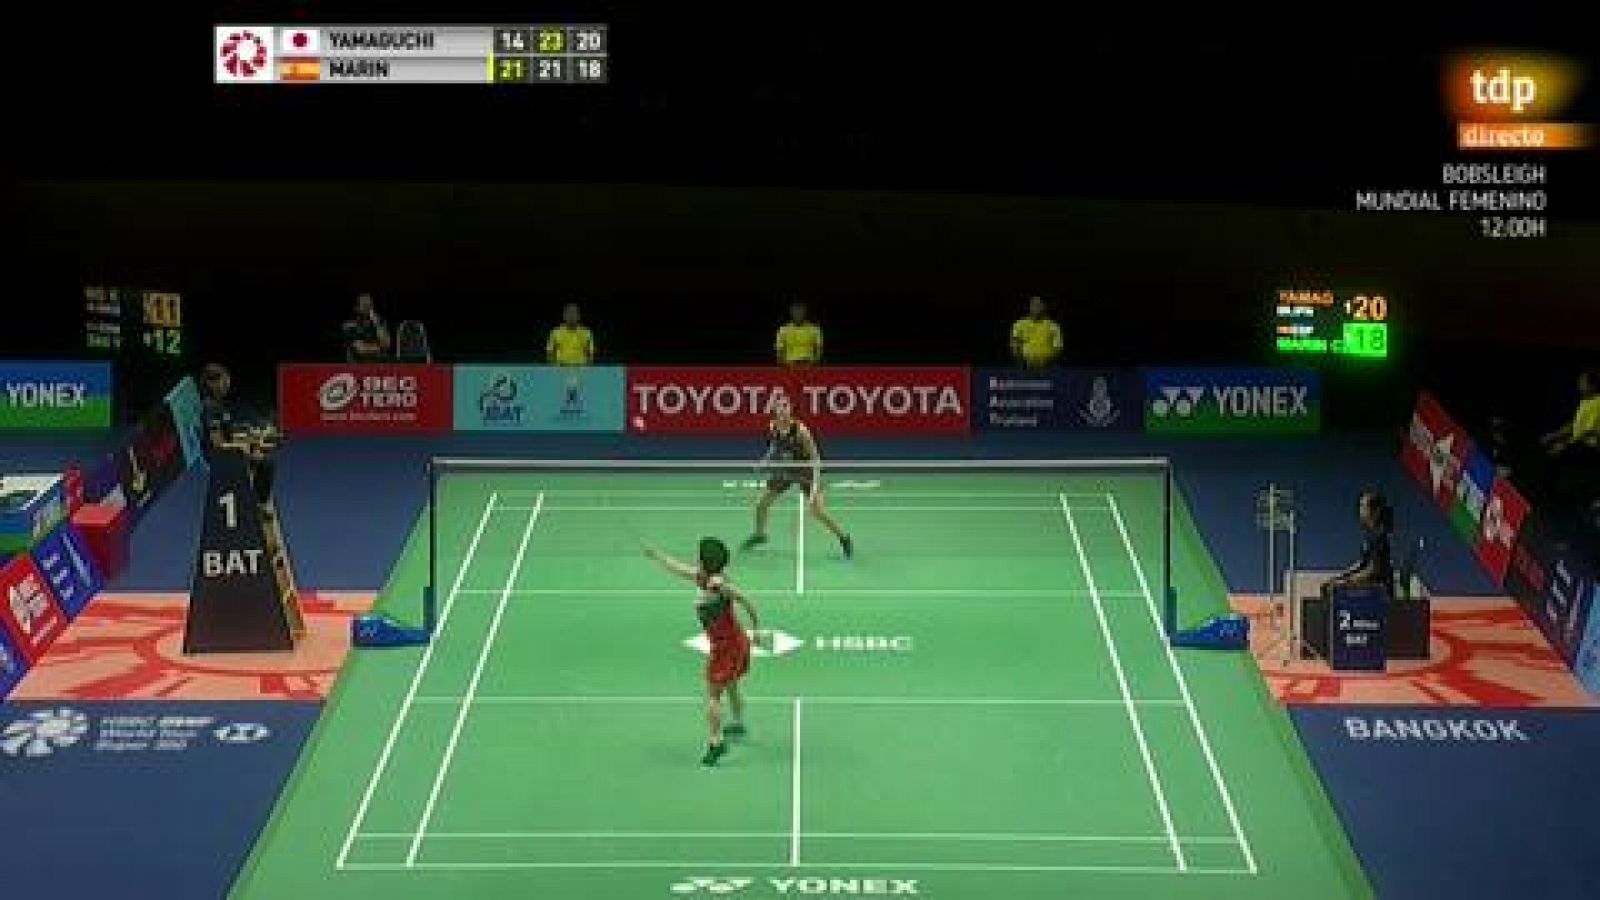 Bádminton | Carolina Marin pierde en semifinales de Tailandia ante Yamaguchi - rtve.es